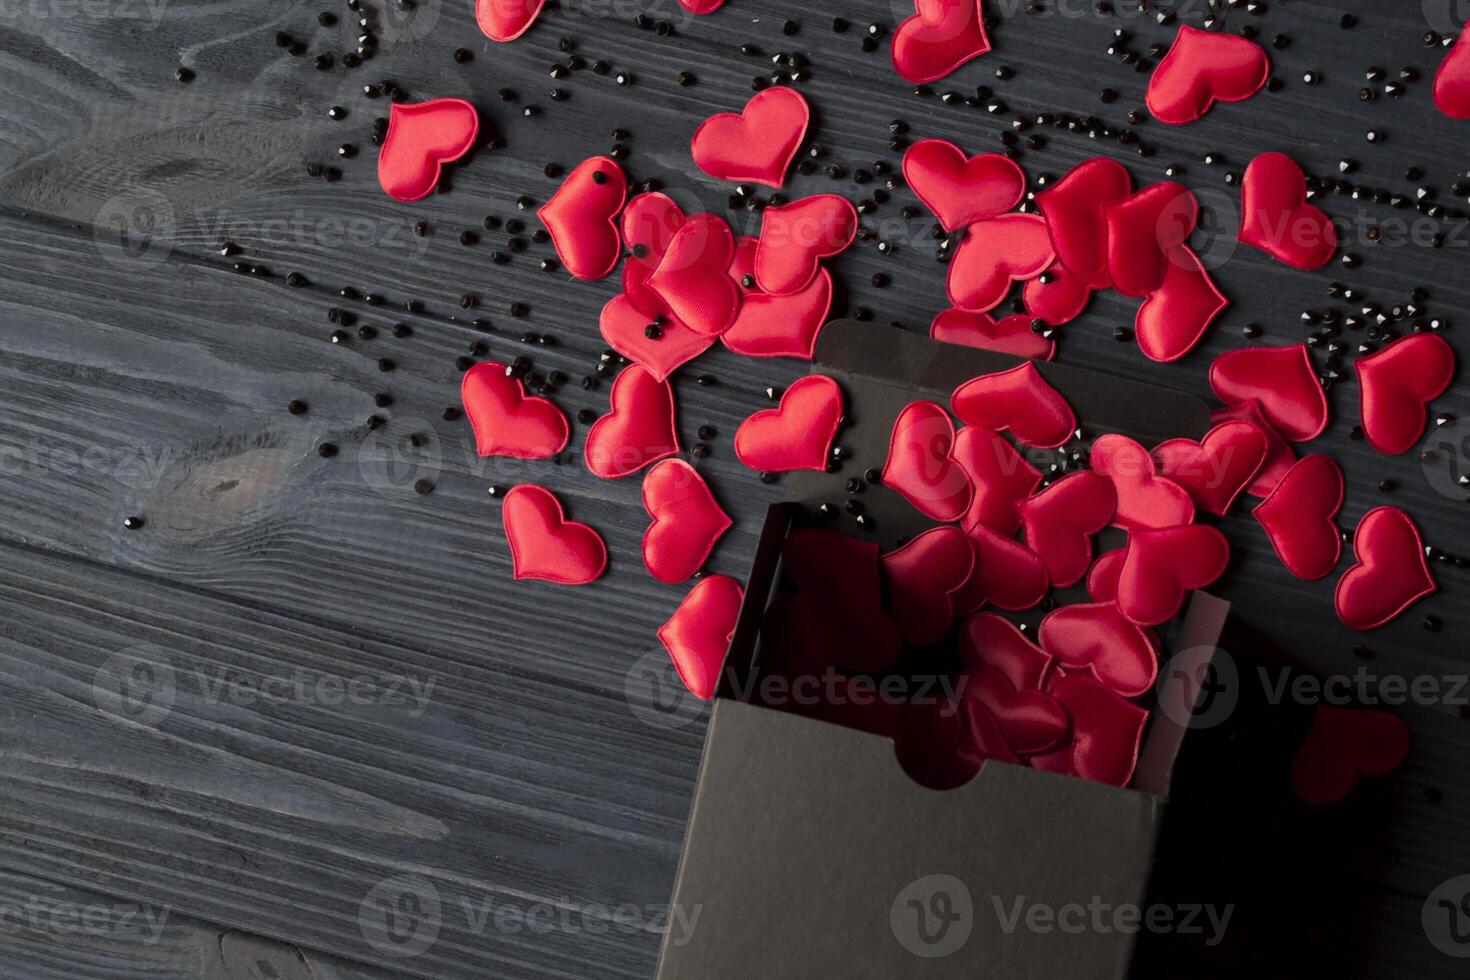 röd hjärtan är hällde ut av en svart gåva låda på en mörk blå trä- tabell. foto